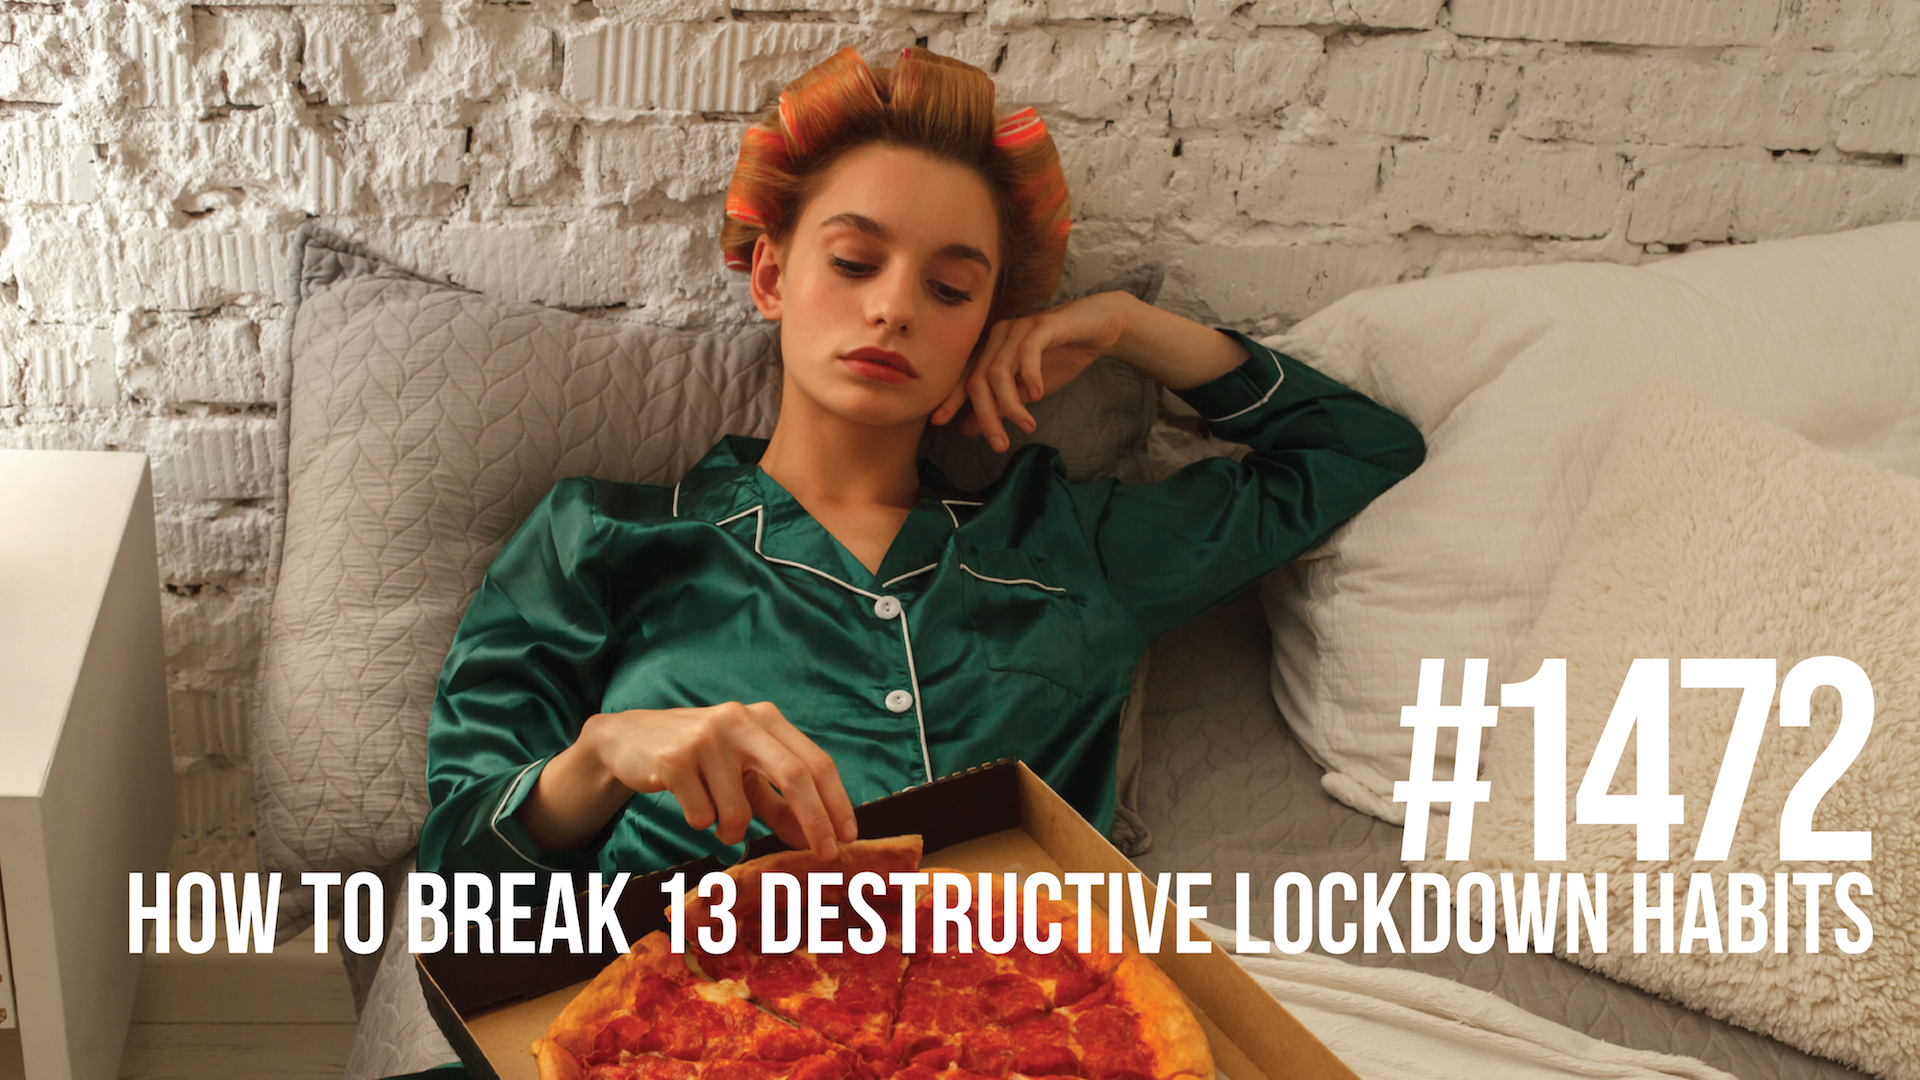 1472: How to Break 13 Destructive Lockdown Habits